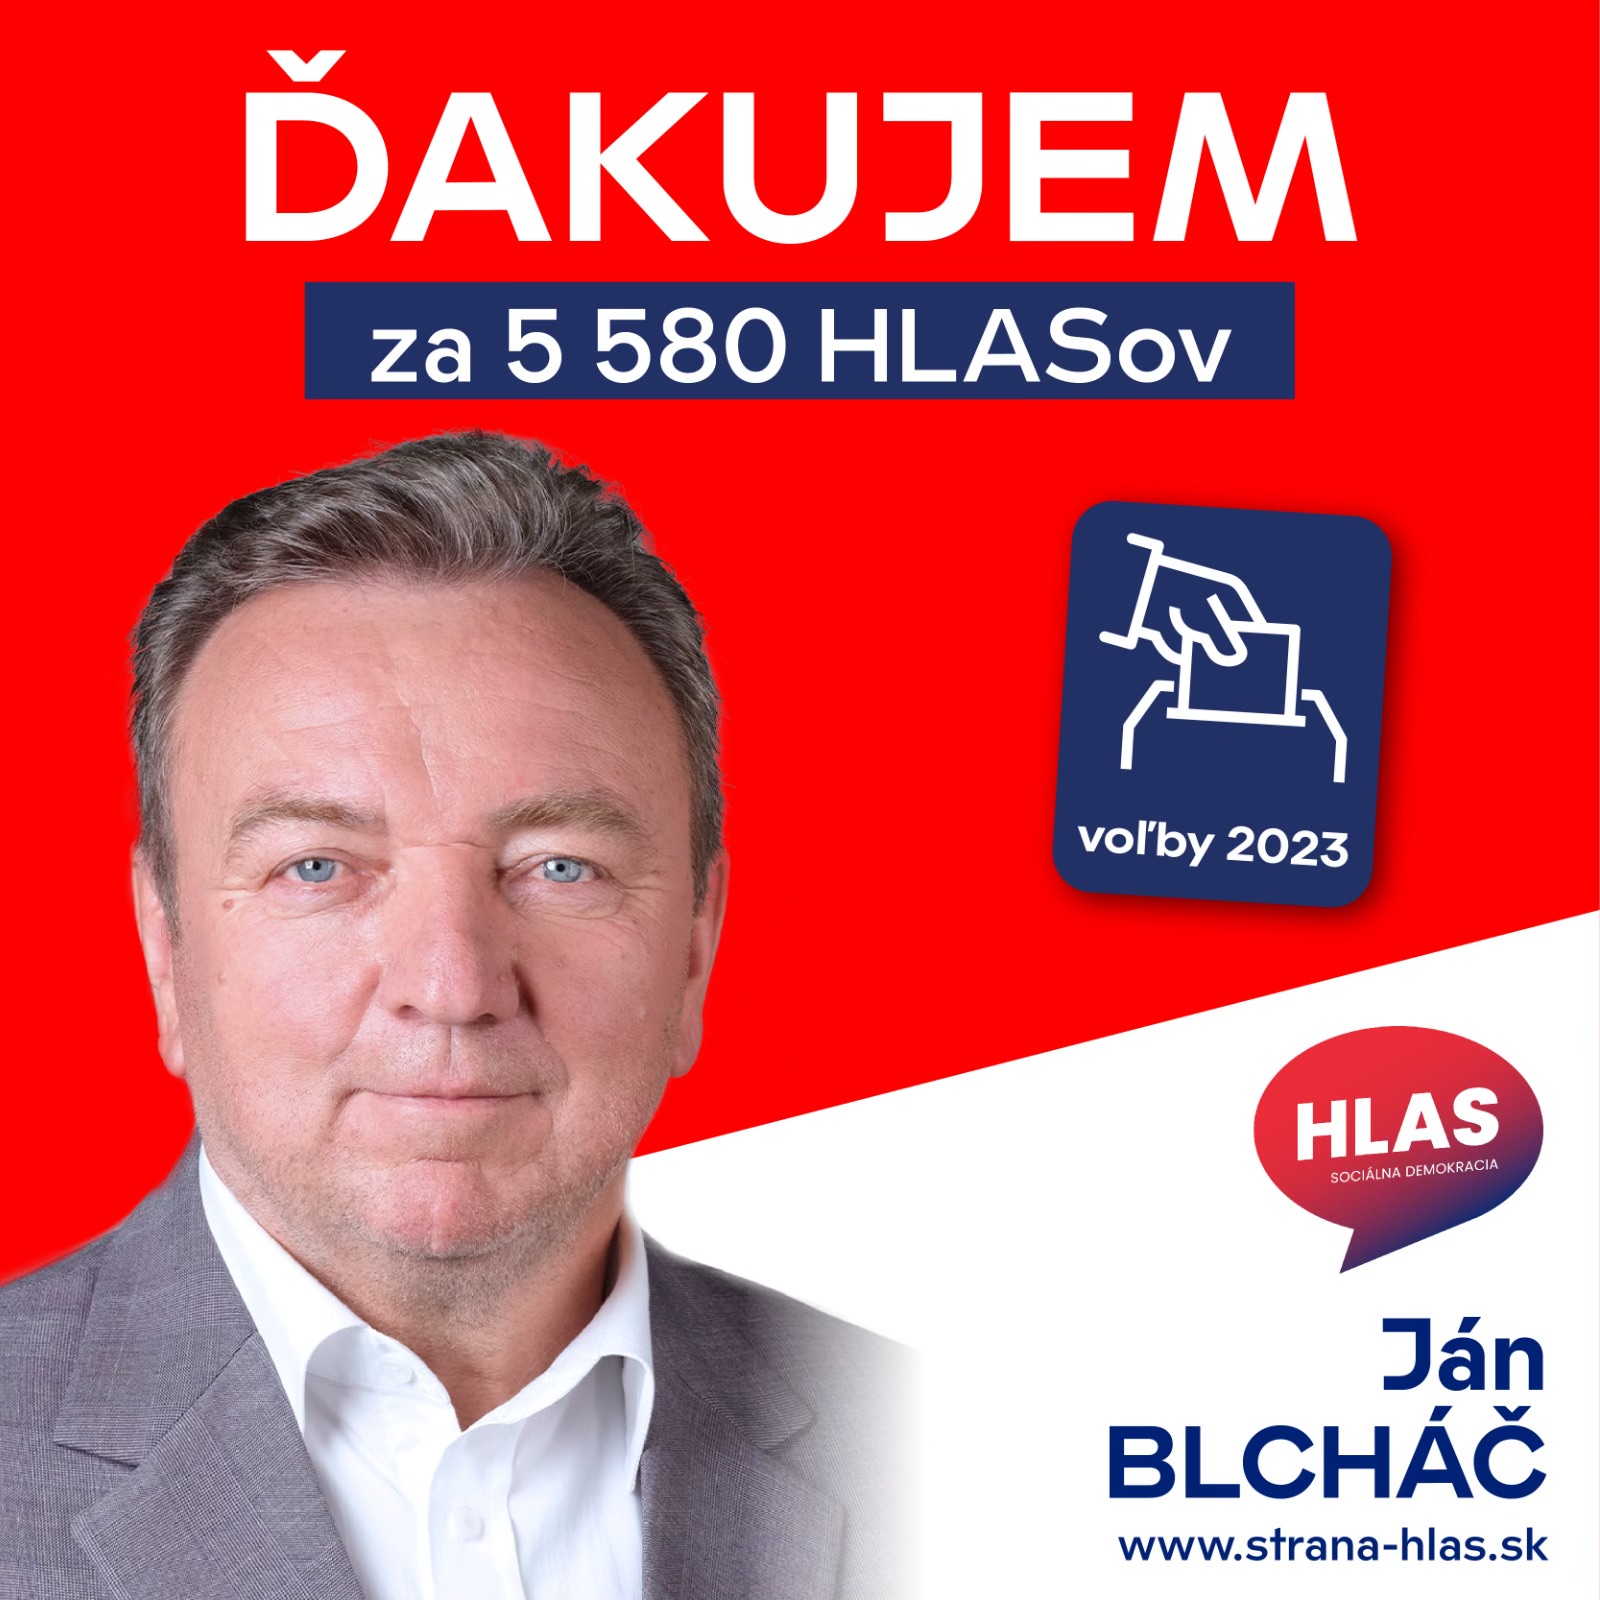 Ján Blcháč